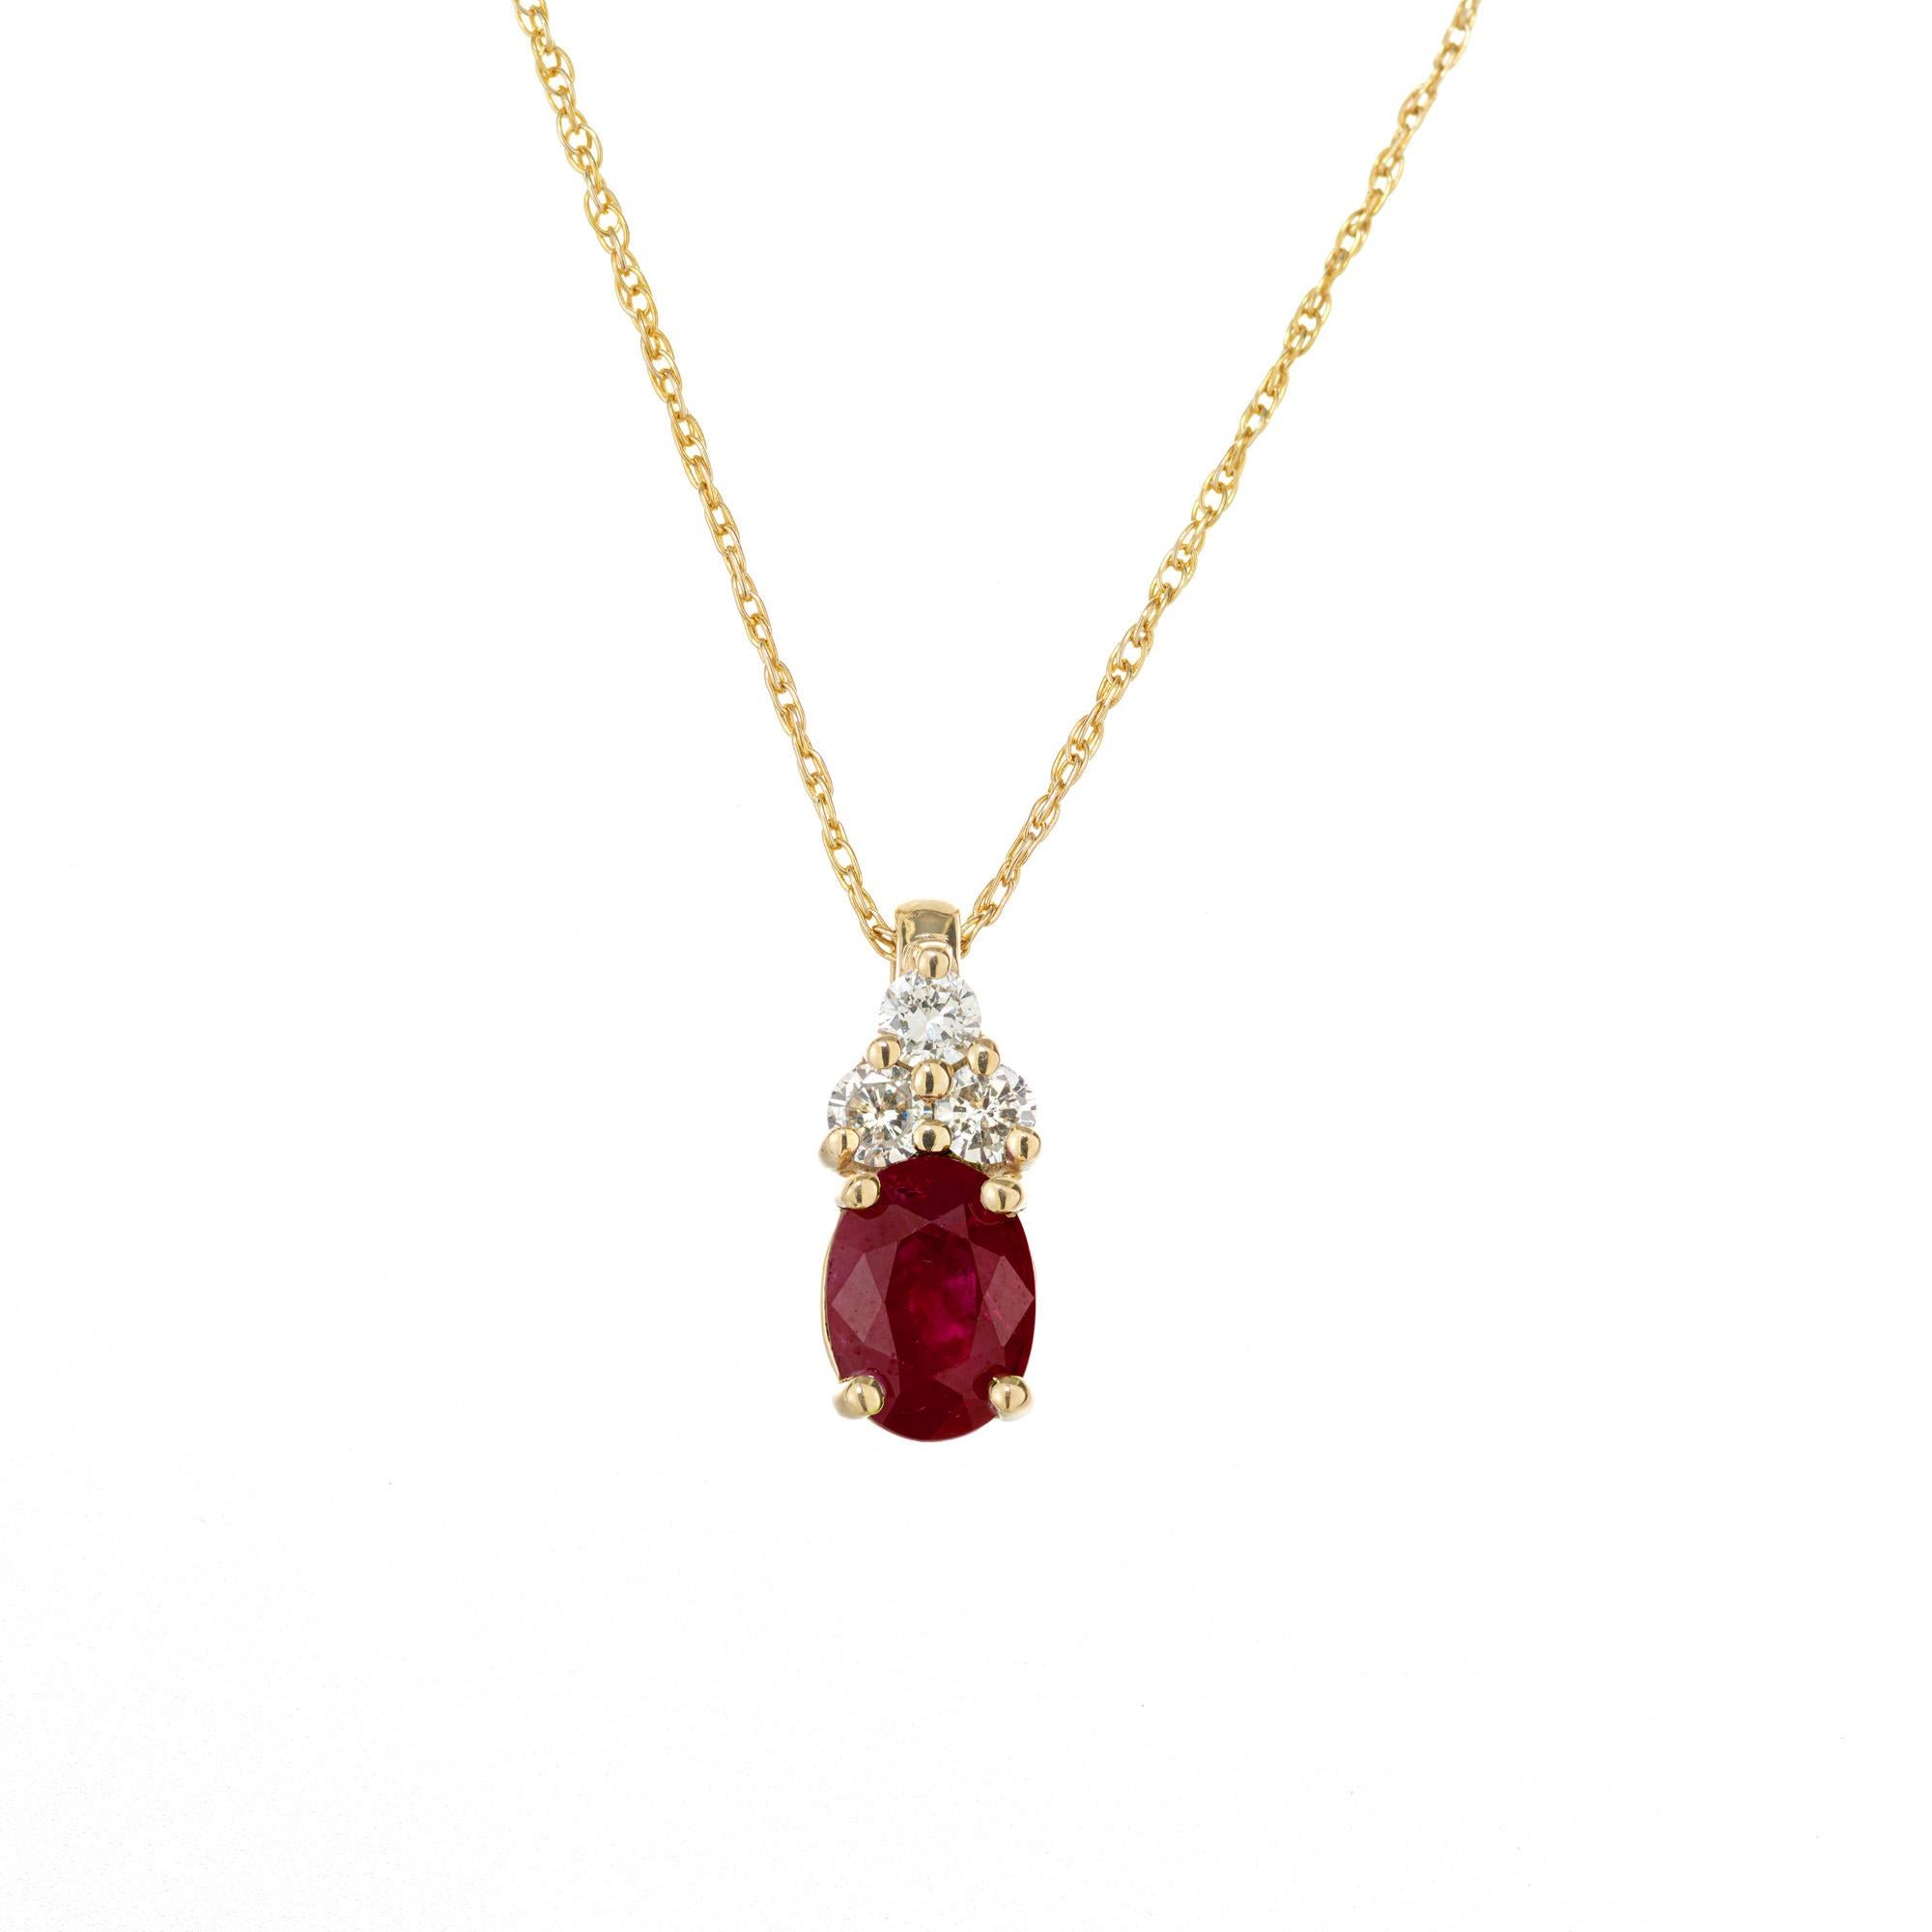 Collier à pendentifs en rubis et diamants. Certifié GIA, rubis ovale de 1,14 carat de Birmanie ( Myanmar), serti dans une monture en or jaune 14k avec 3 accents de diamants ronds de taille brillant. Chauffé - résidus modérés. Chaîne de 17 pouces en